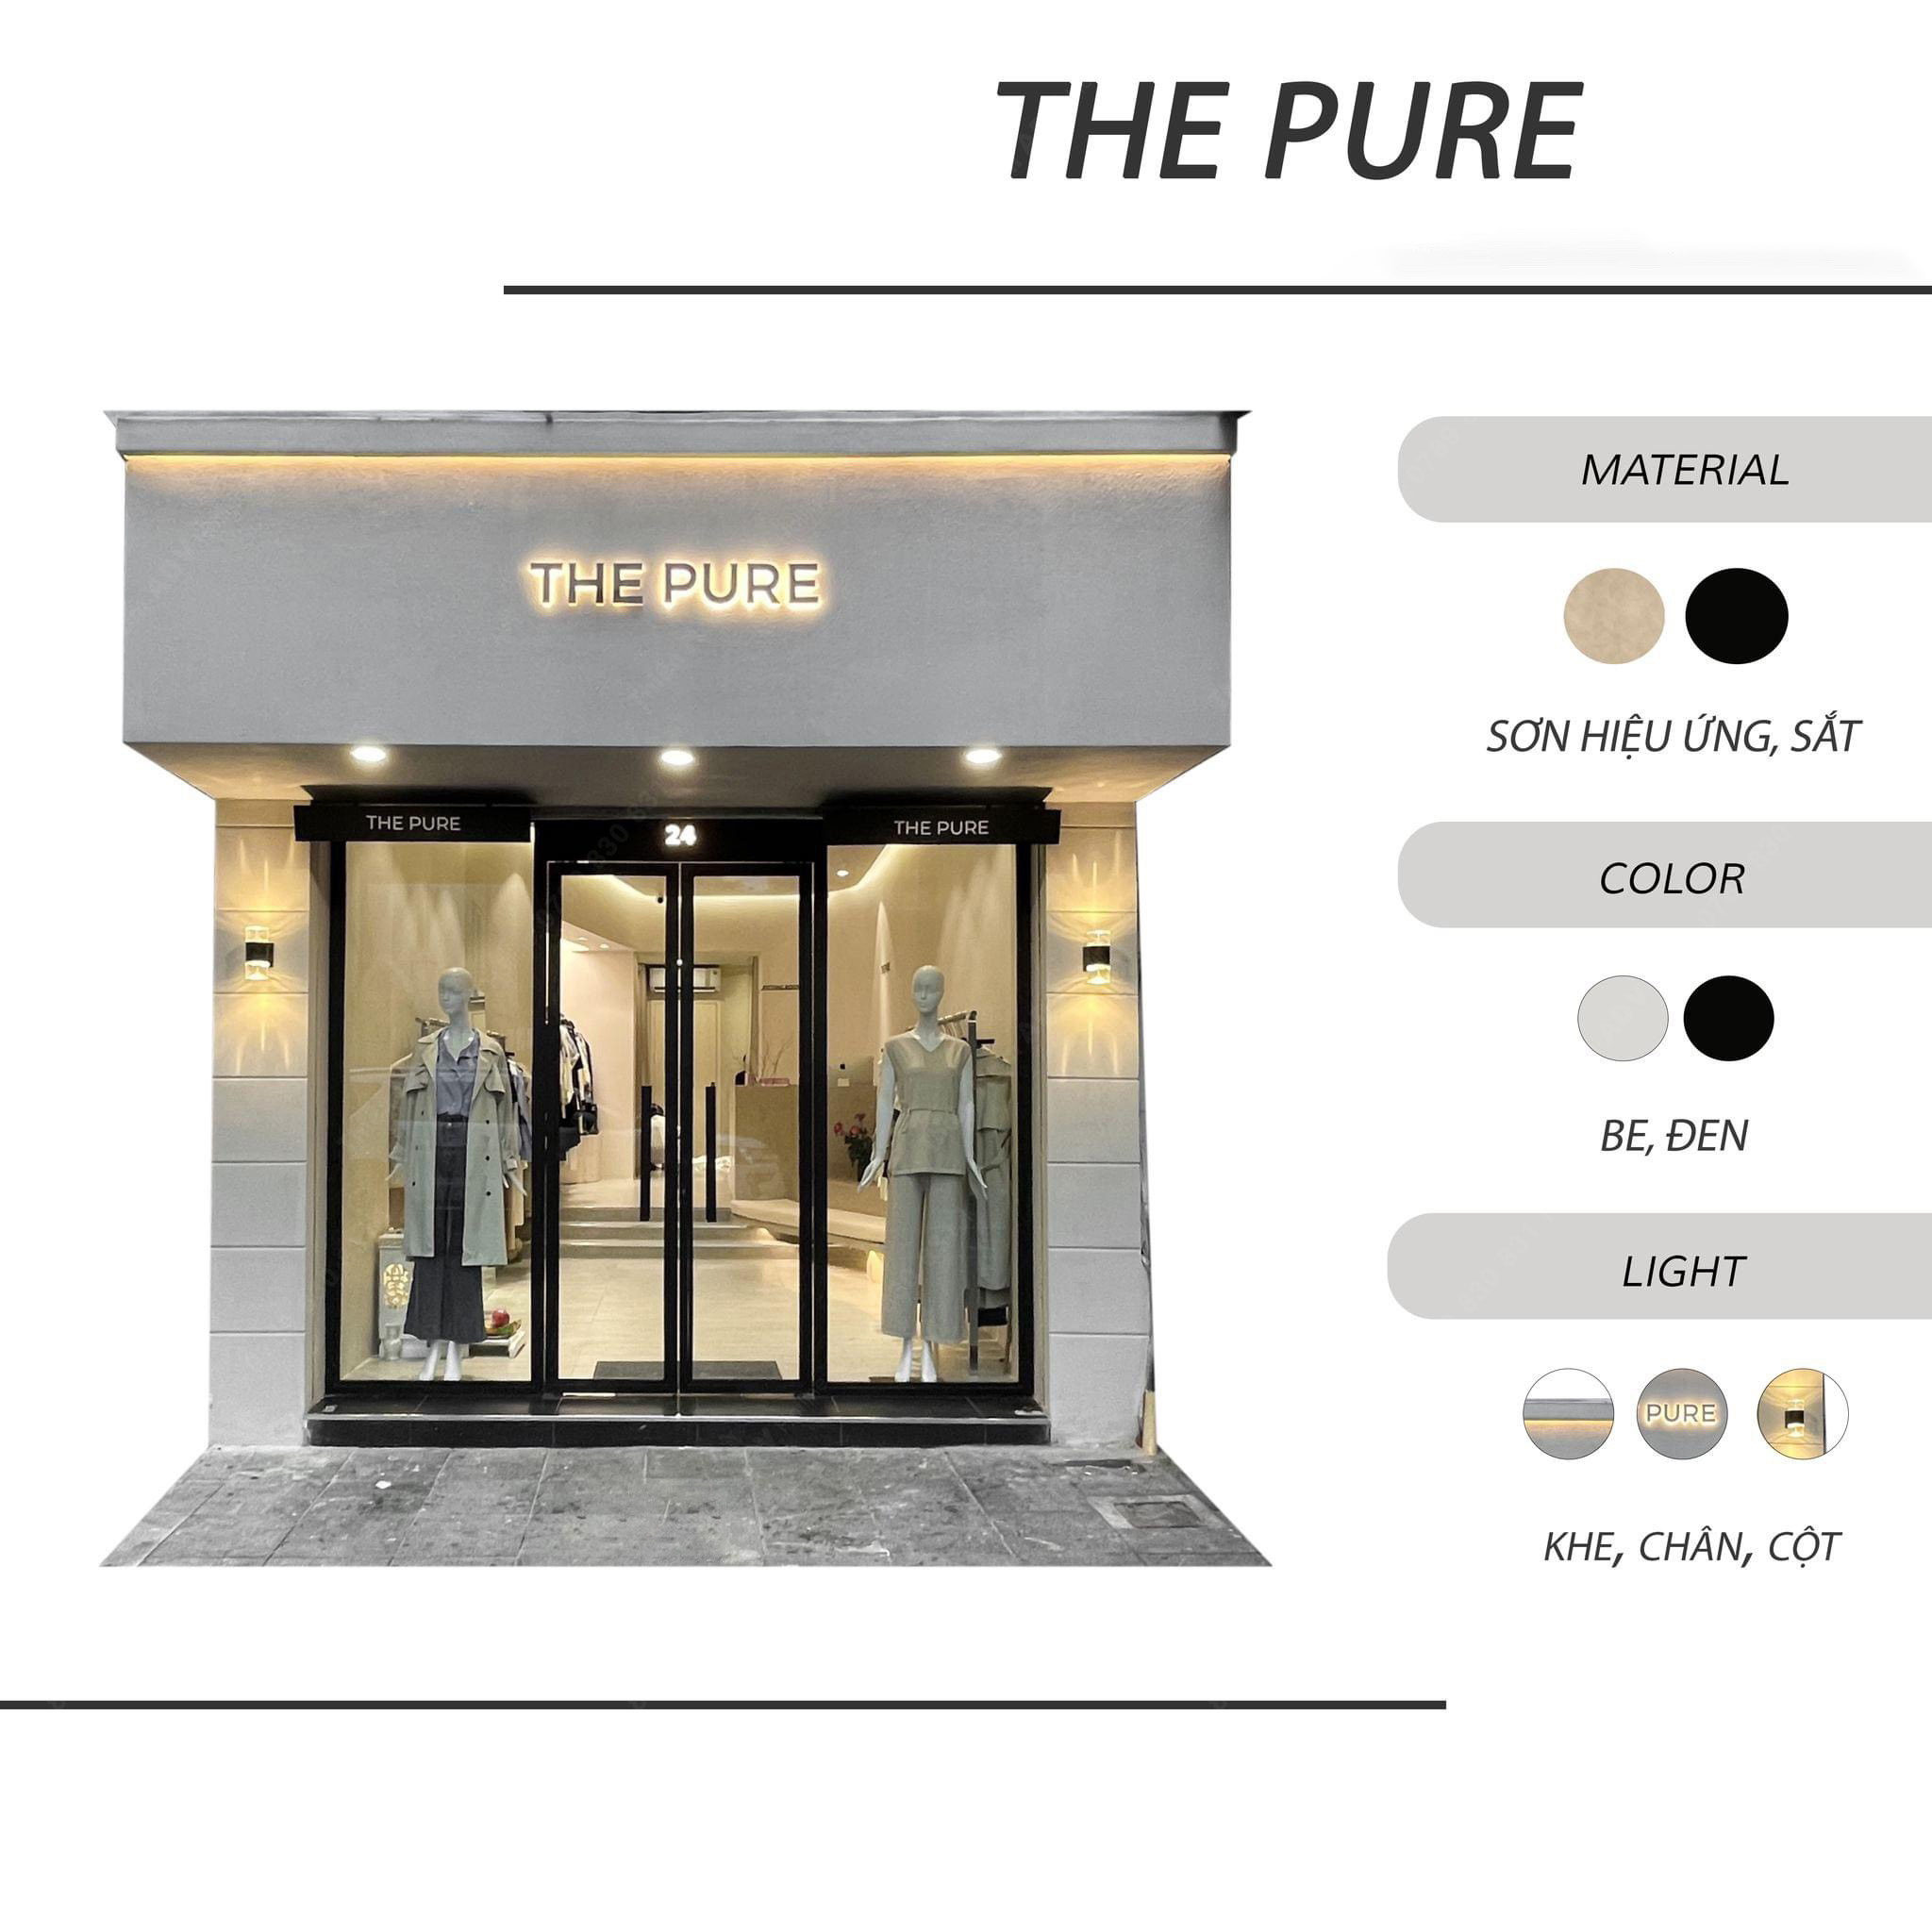 Thiết kế bảng hiệu cửa hàng quần áo THE PURE kết hợp cổ điển và hiện đại